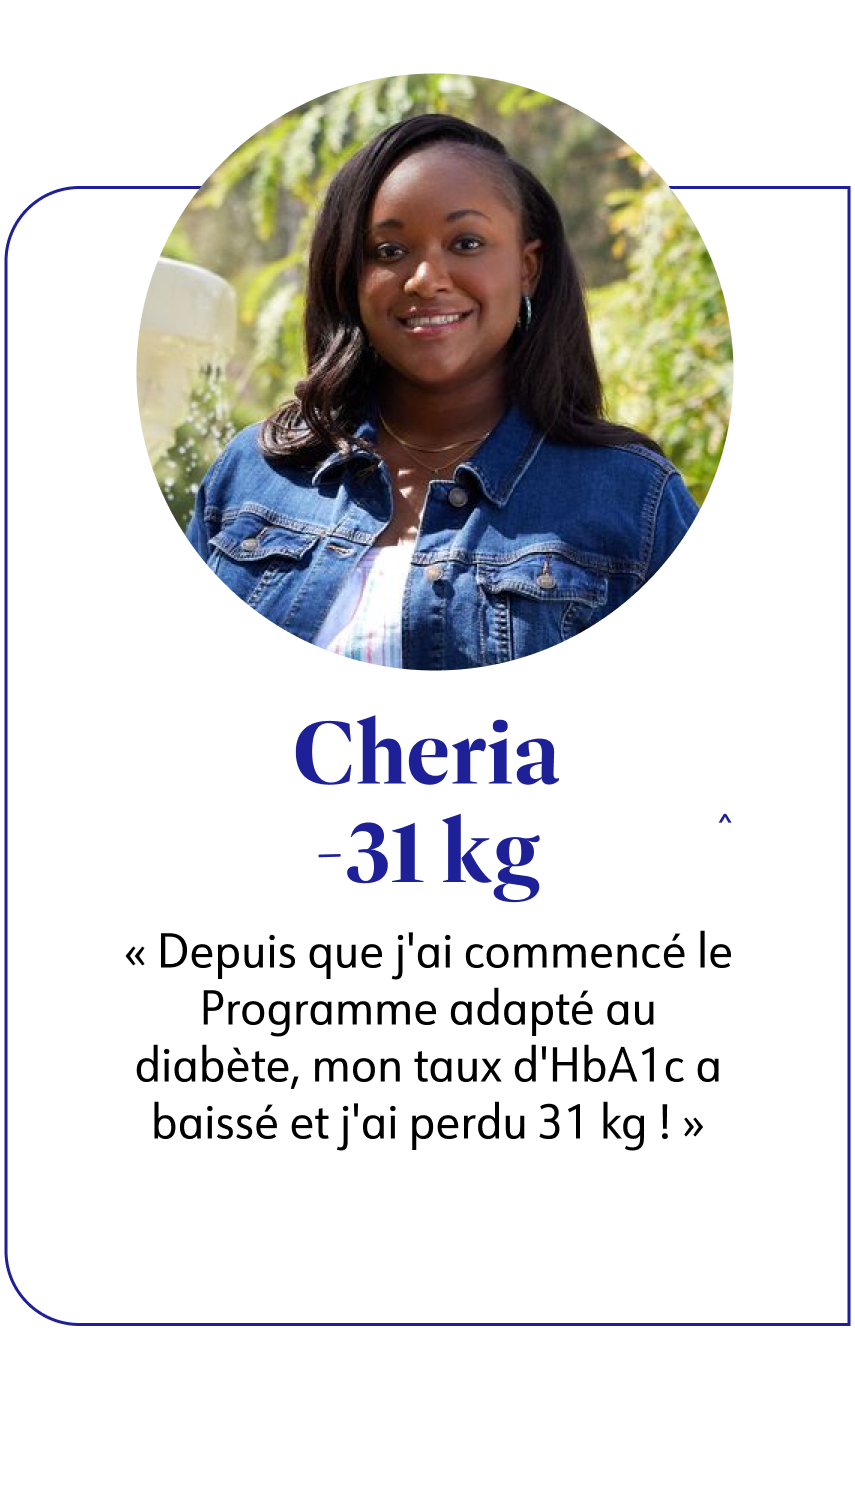 Cheria a perdu 31 kg avec WW. Elle témoigne: le programme diabète m'a permis de faire baisser mon taux d'HbA1c.